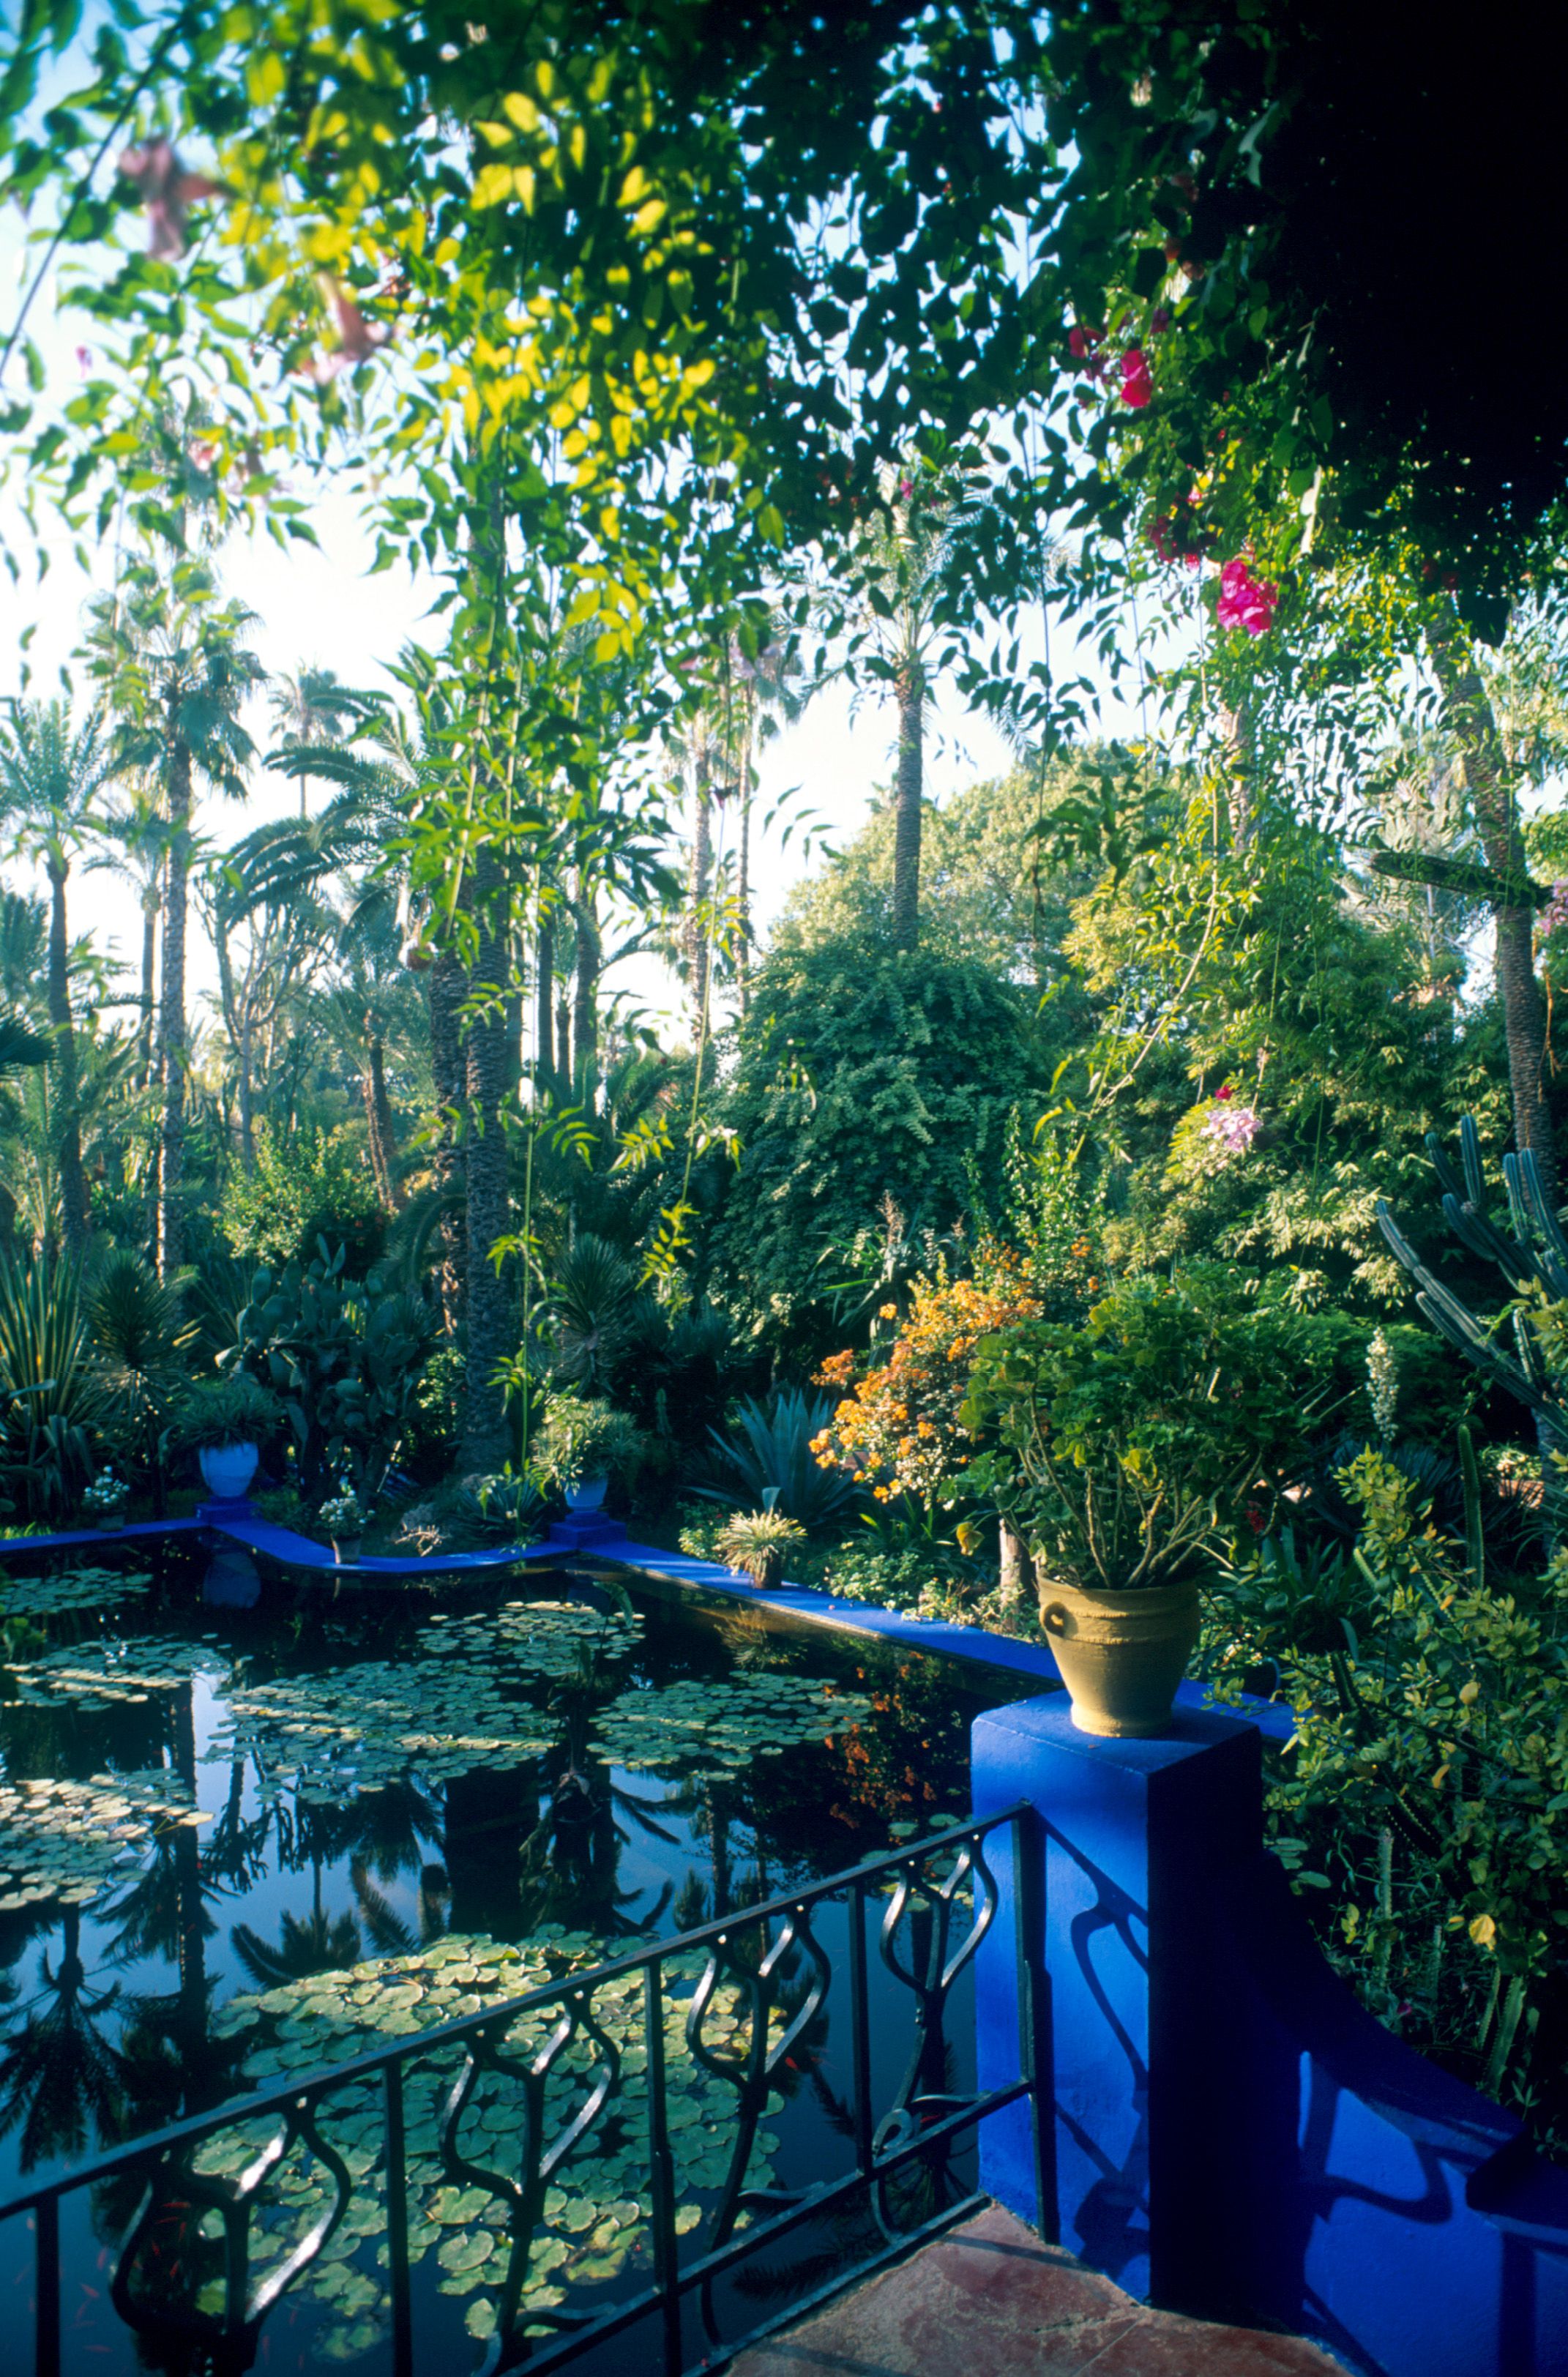 イヴ・サンローランが愛したモロッコのマジョレル庭園を造園家・齊藤太一さんが語る